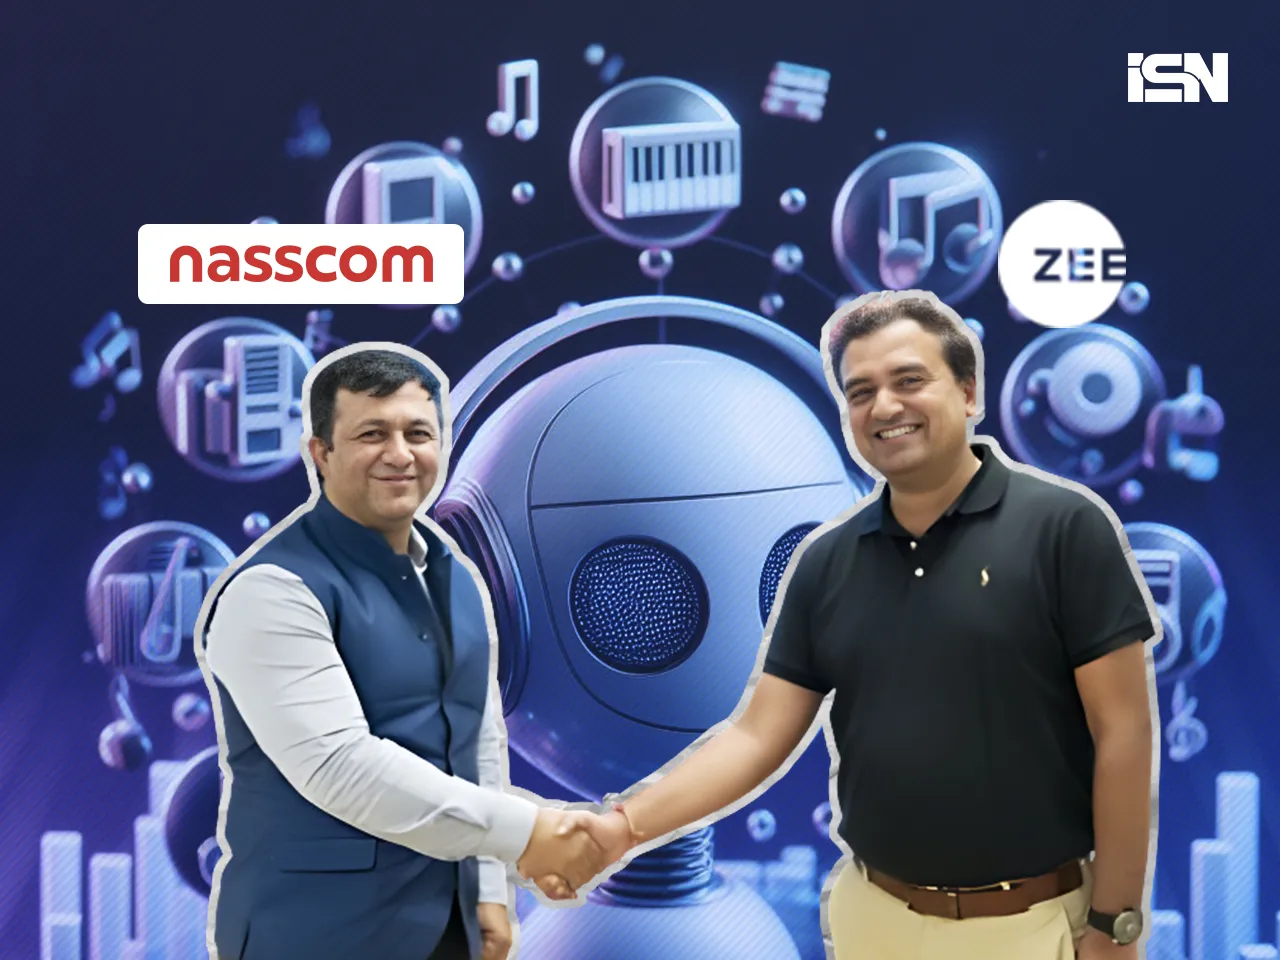 Zee partners with nasscom 2 